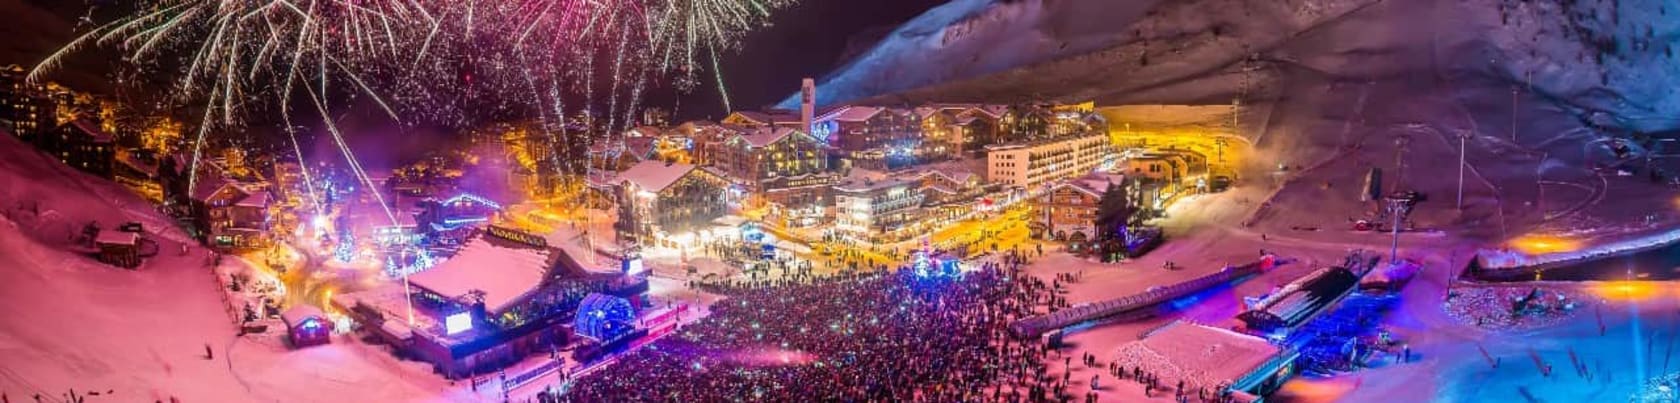 Nytårsfest med mange mennesker på snetorvet i Val d Isère